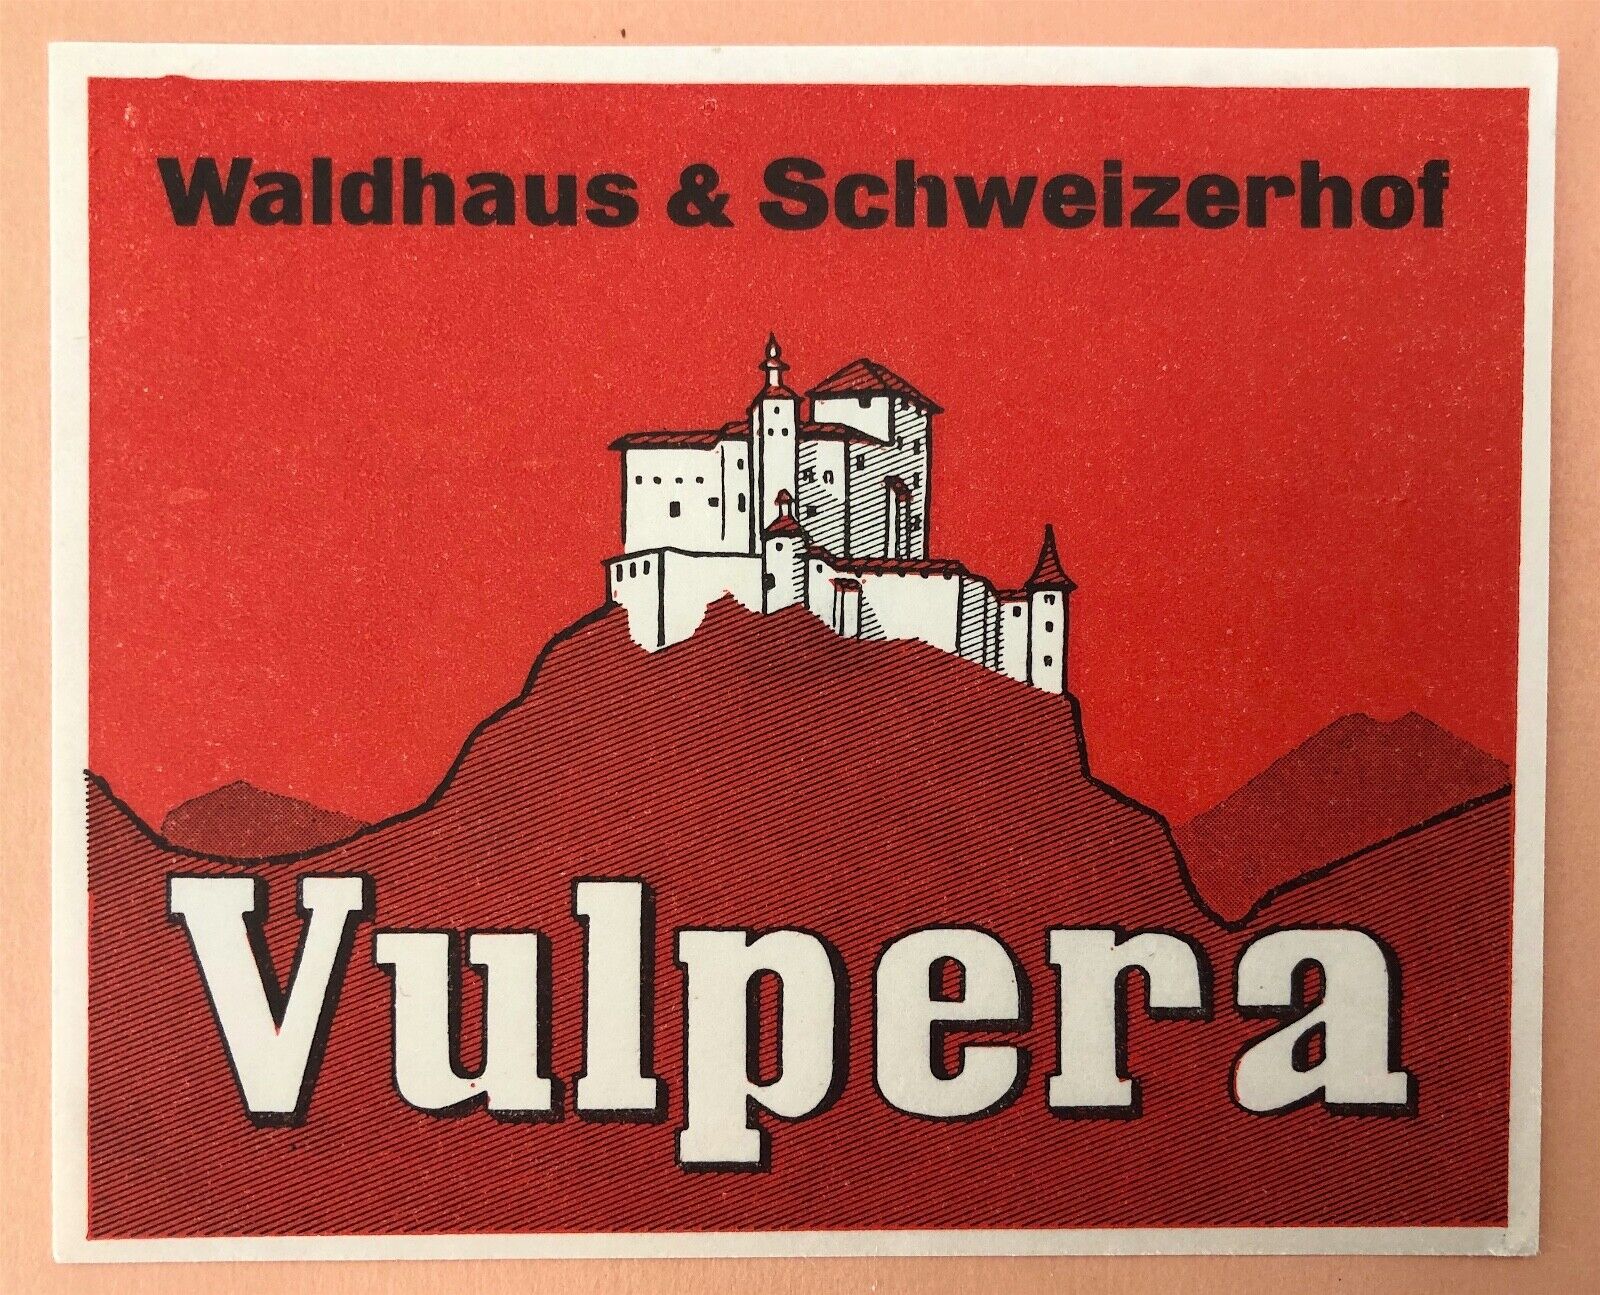 Hotel Luggage Label Waldhaus & Schweizerhof, Vulpera / Switzerland